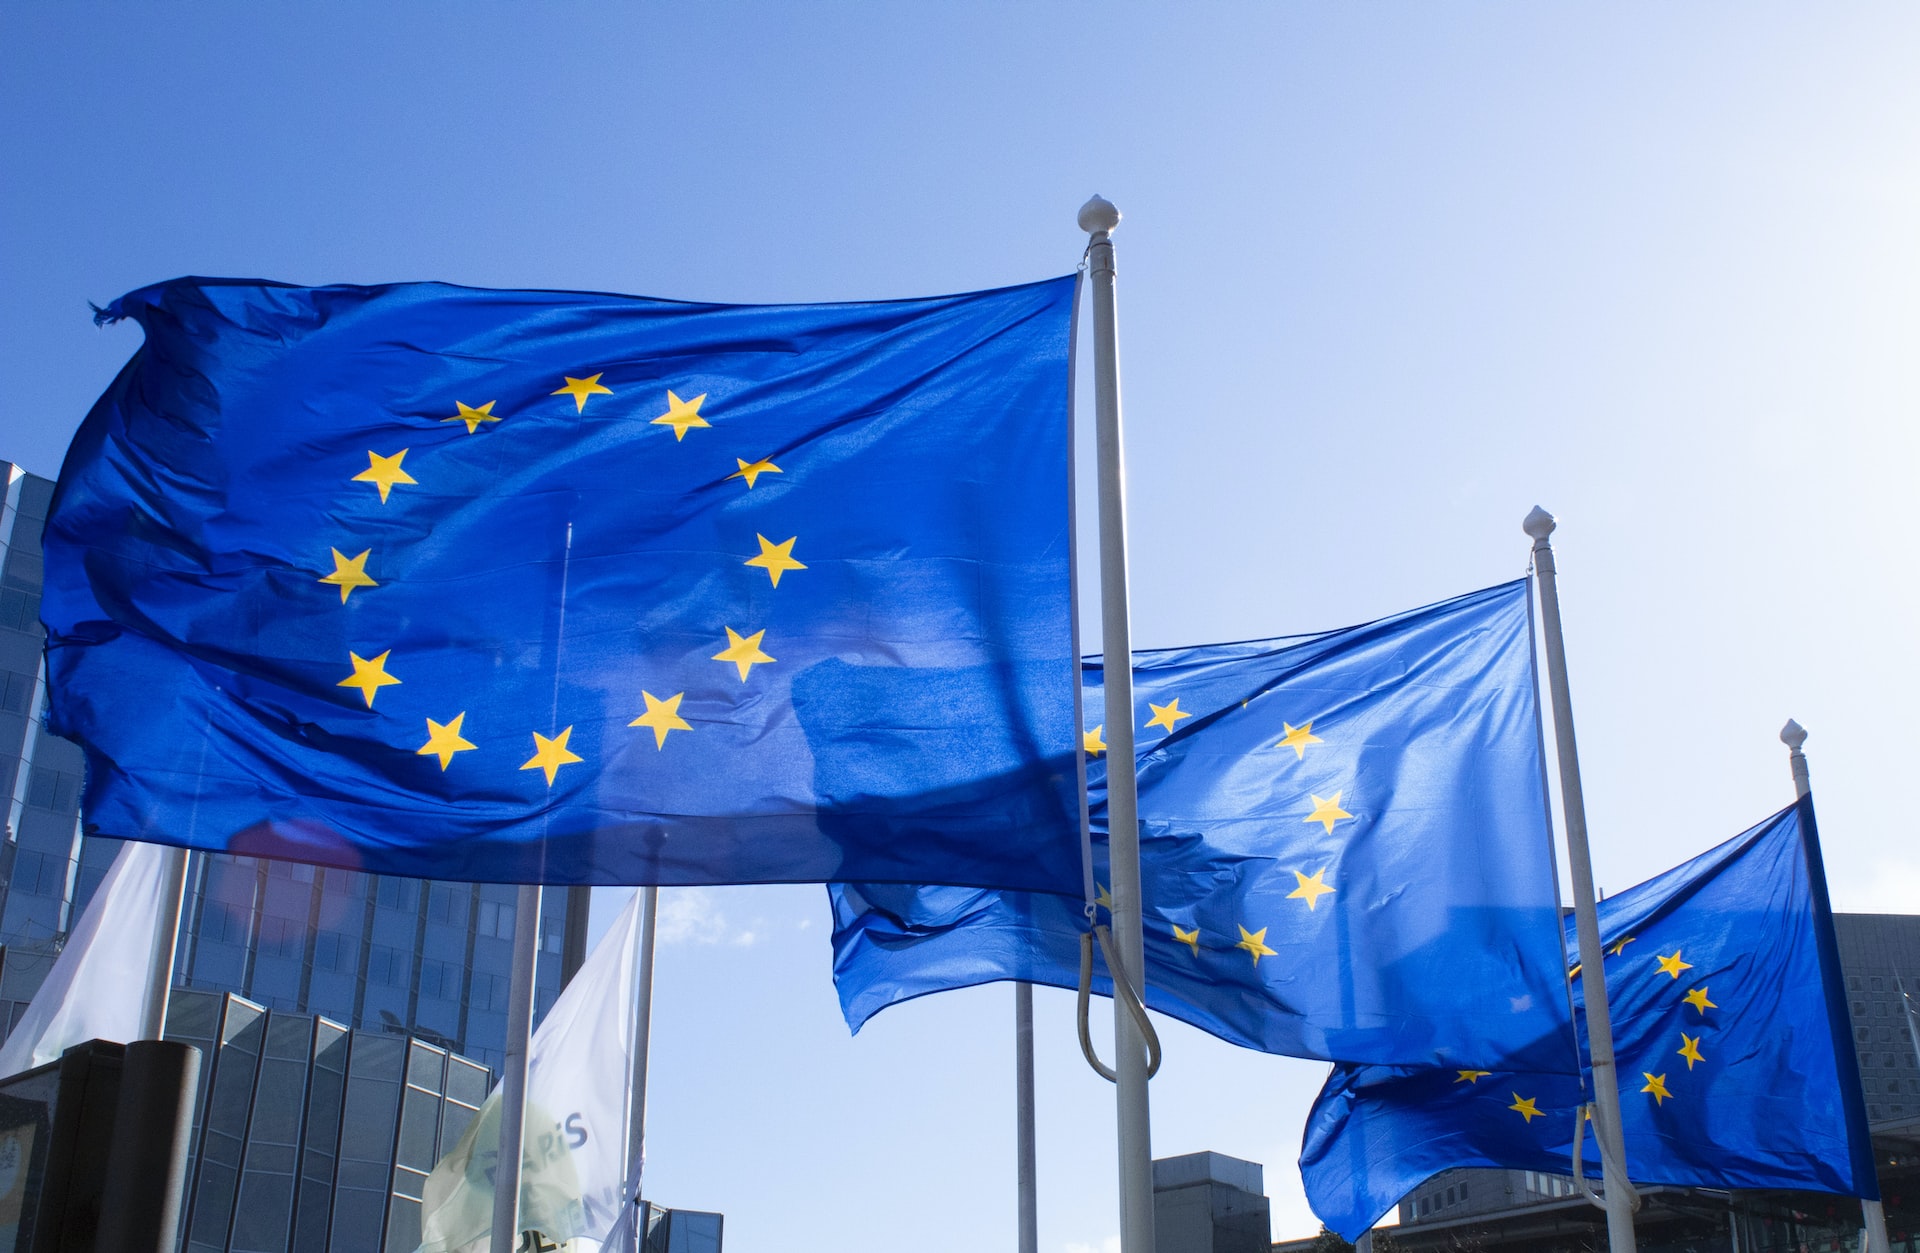 Flaggen der Europäischen Union im Wind